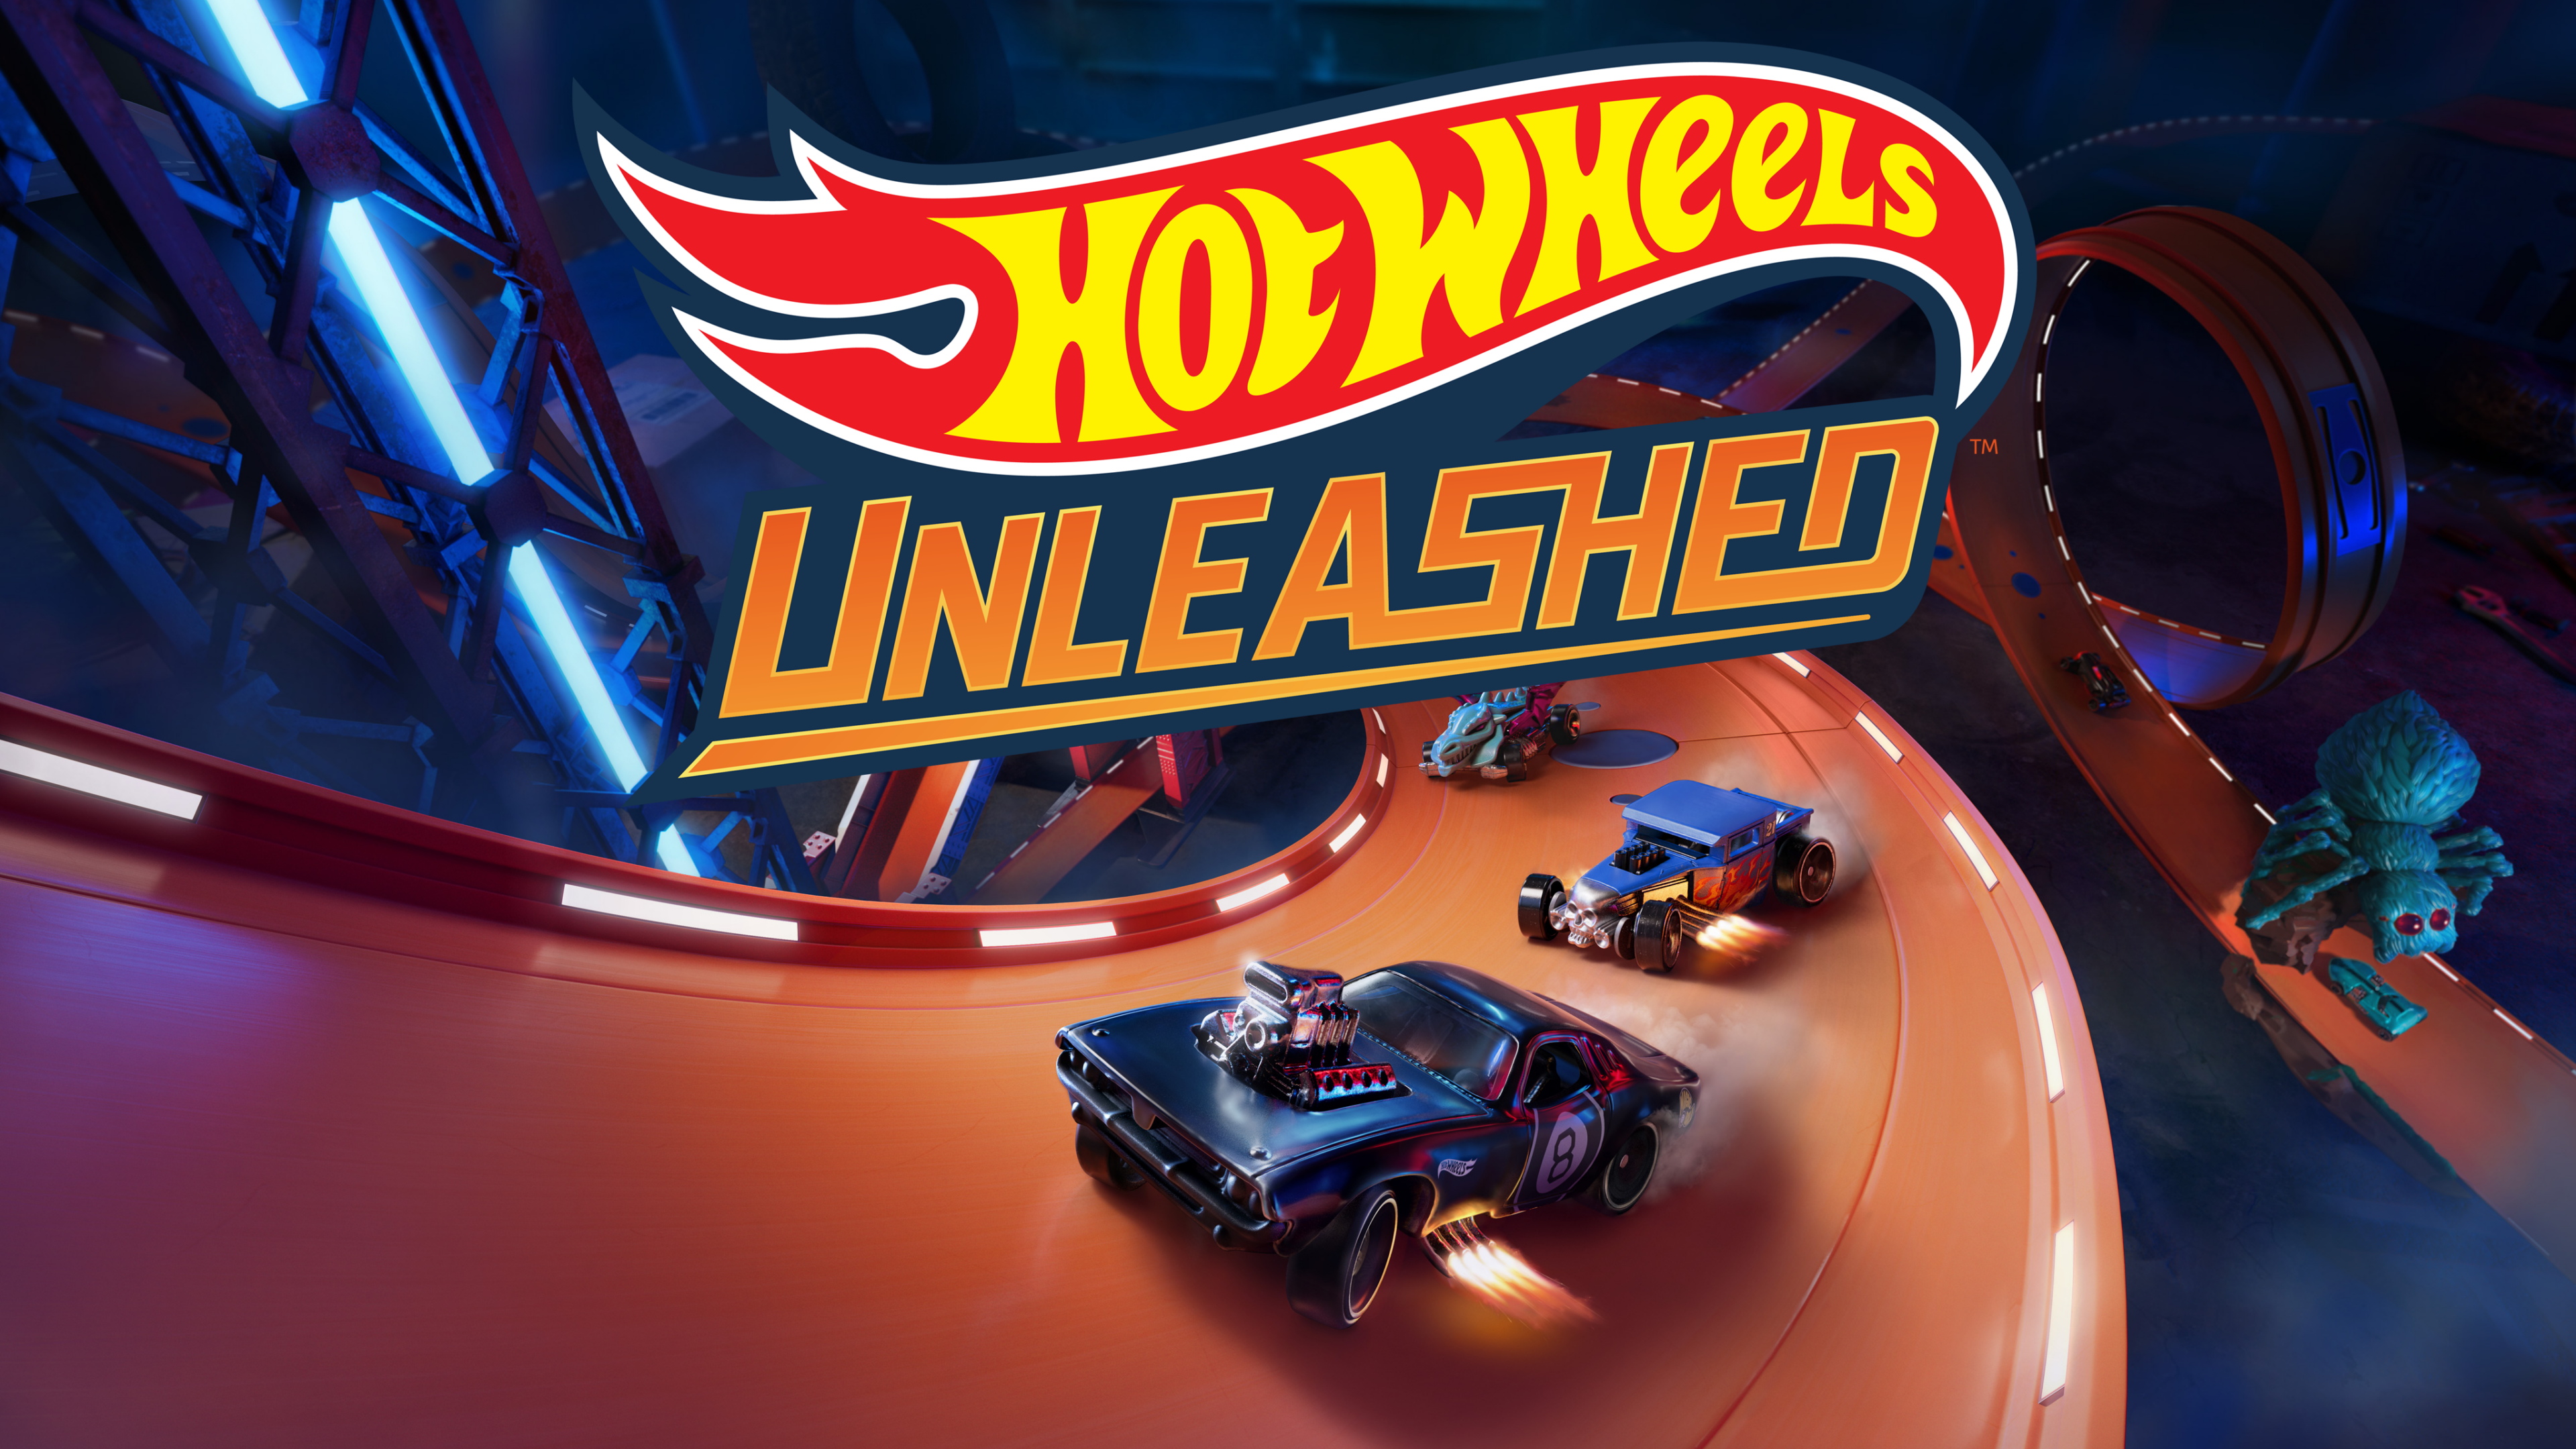 Las ventas de Hot Wheels Unleashed superan los 2 millones de ejemplares